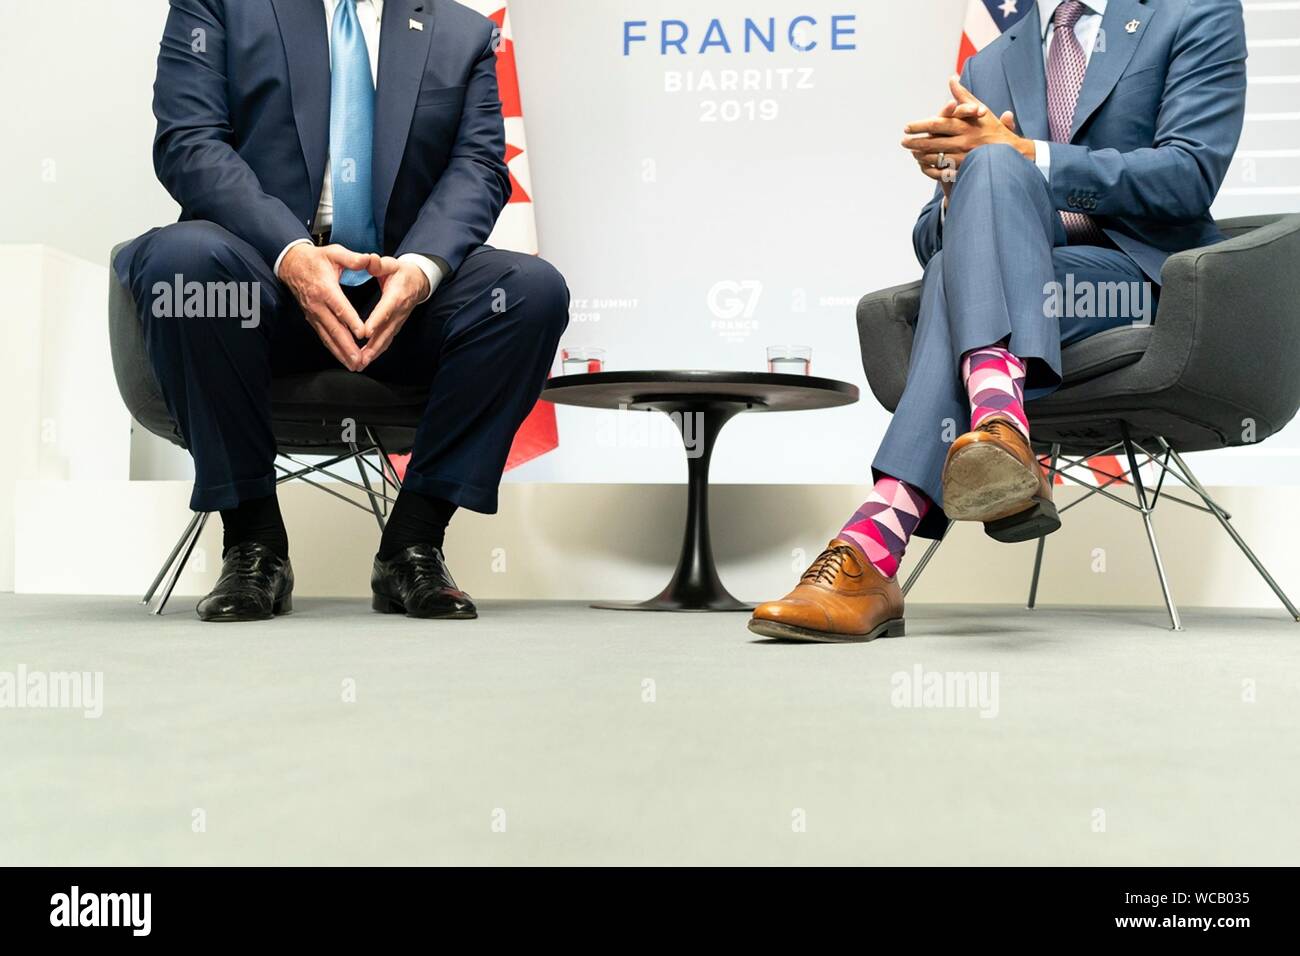 Un contraste en estilo mostrando los coloridos calcetines gastados por el  Primer Ministro canadiense Justin Trudeau, derecha y aquellos usados por el  Presidente de Estados Unidos, Donald Trump, antes de su reunión